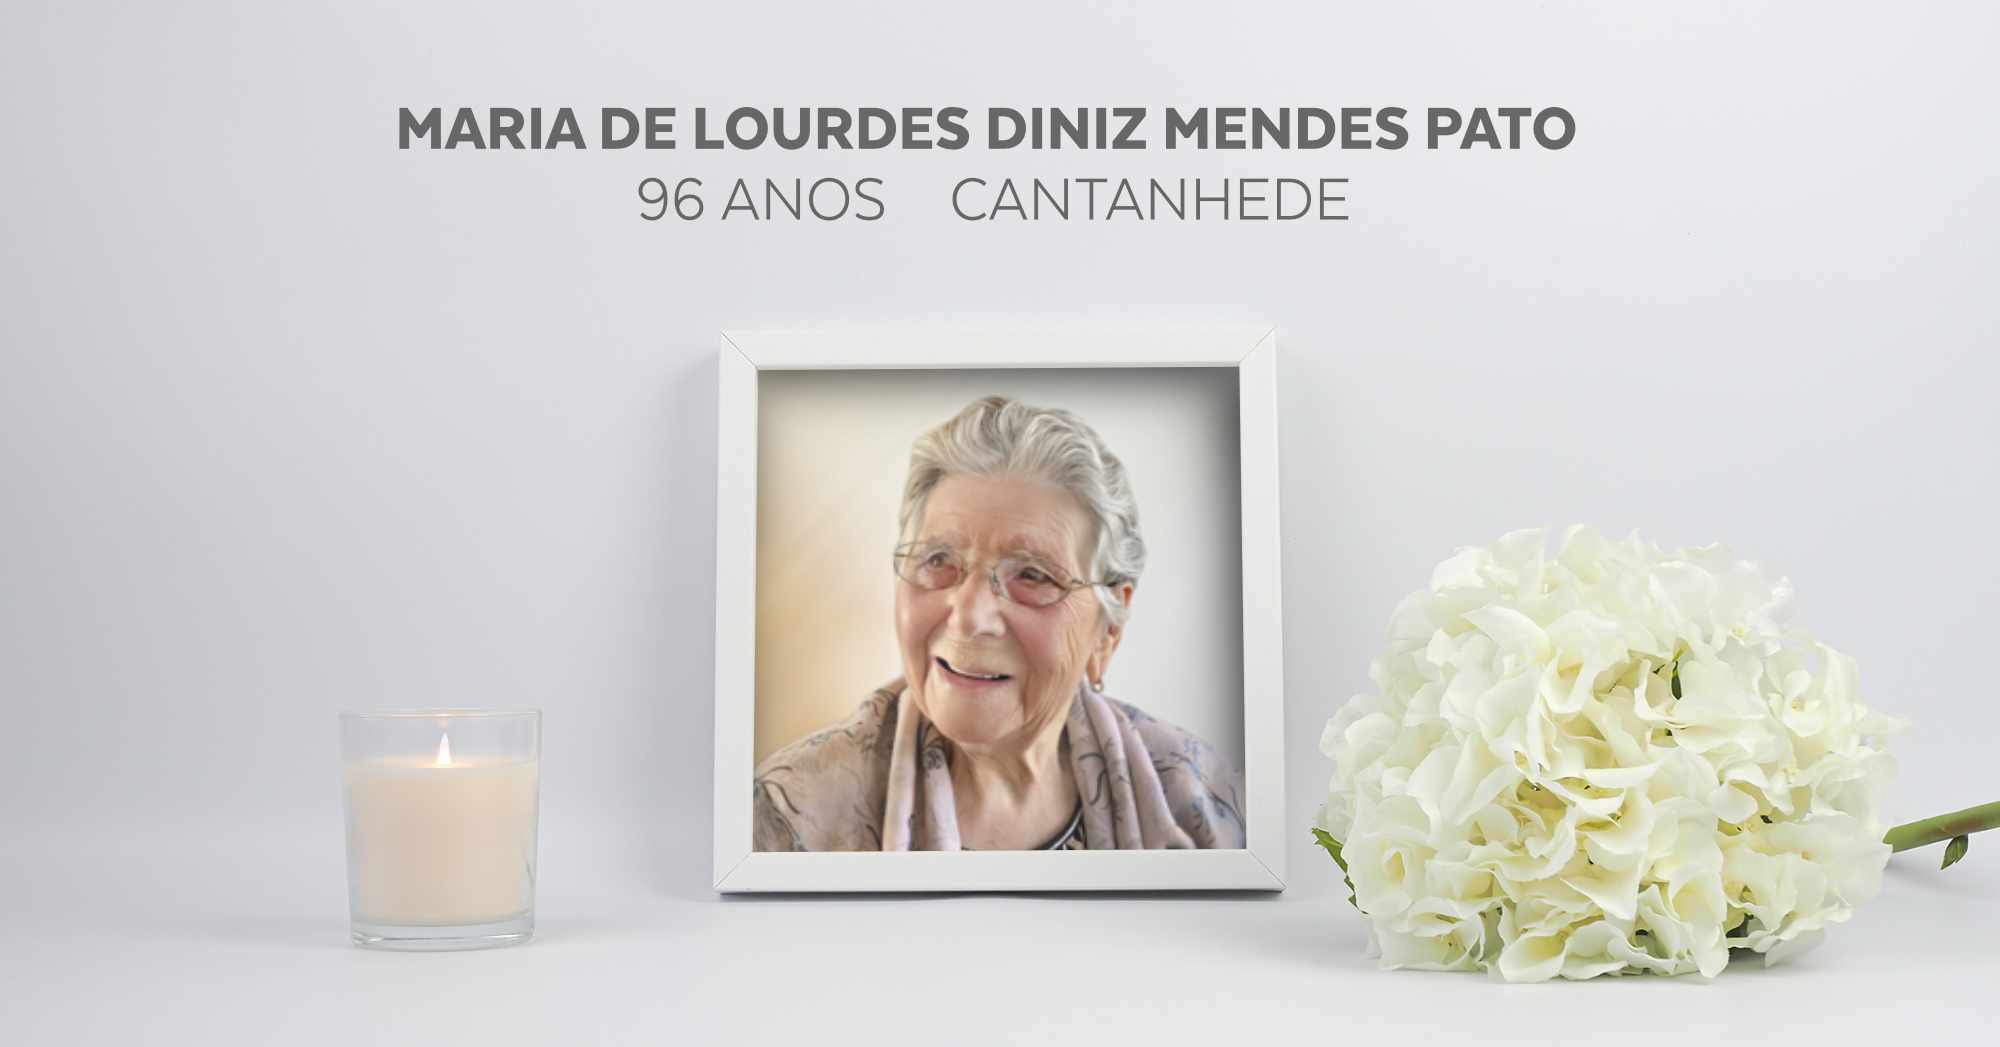 Maria de Lourdes Diniz Mendes Pato